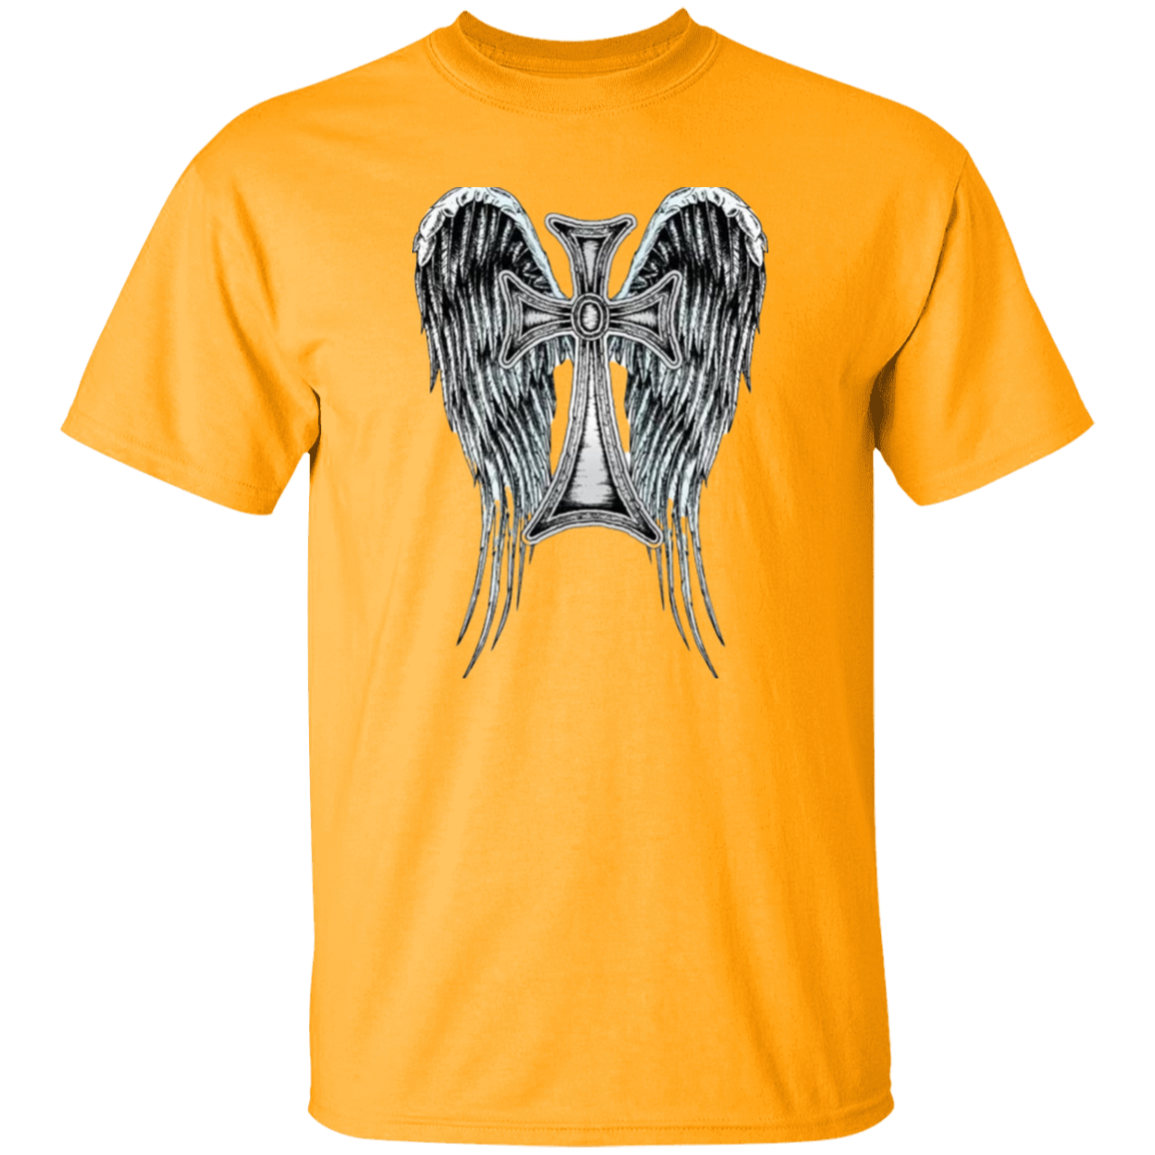 Heraldic Wing Cross oz. T-Shirt, Heraldic Wing cross Men's Jersey LS T-Shirt, Men's Short Sleeve T-Shirt,  Jesus Shirt, Men's T-Shirts